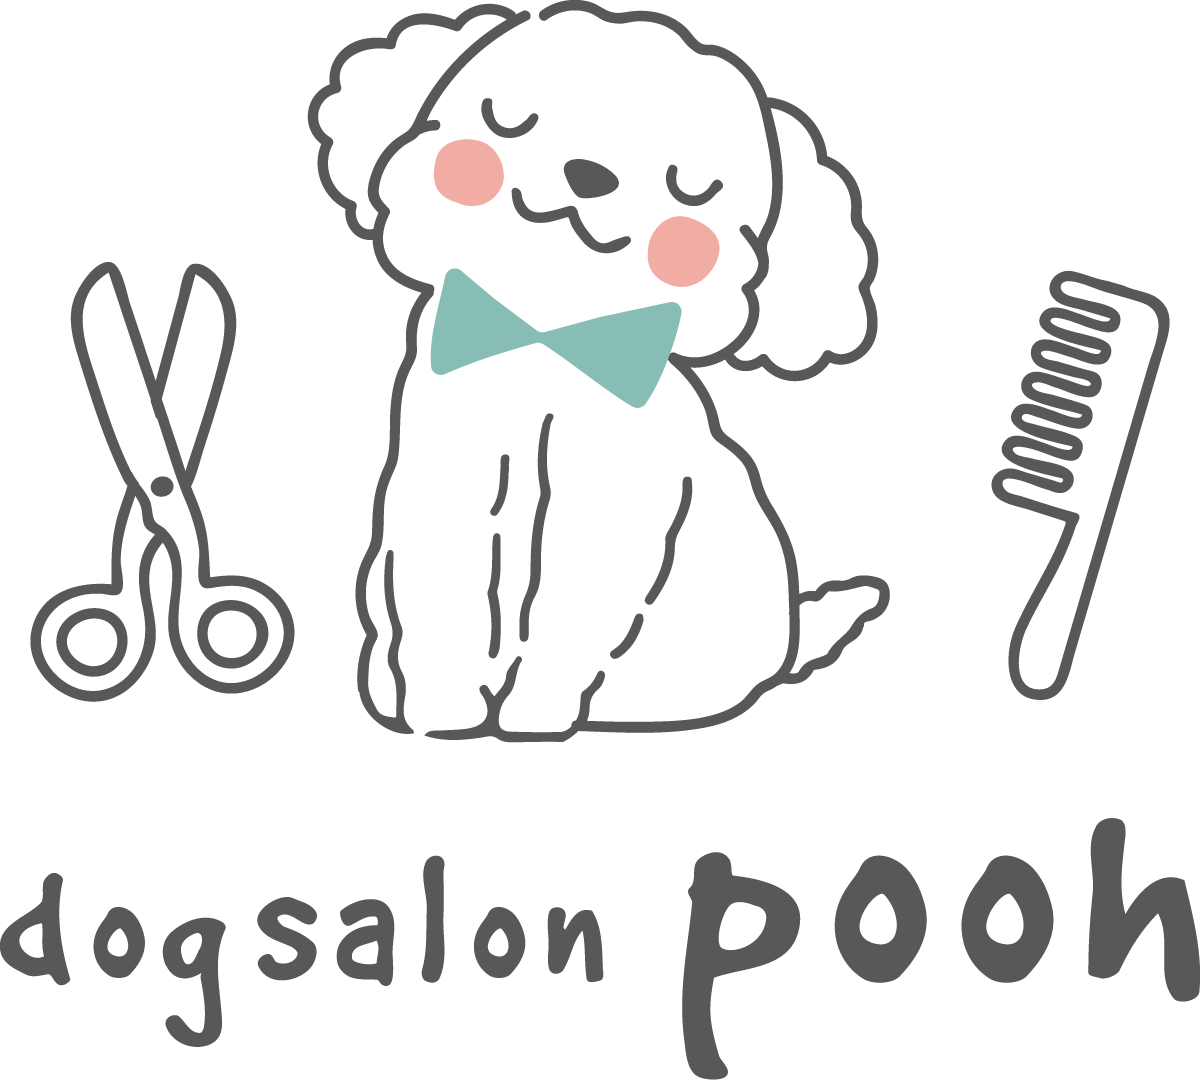 dog salon pooh - ドッグサロンプー